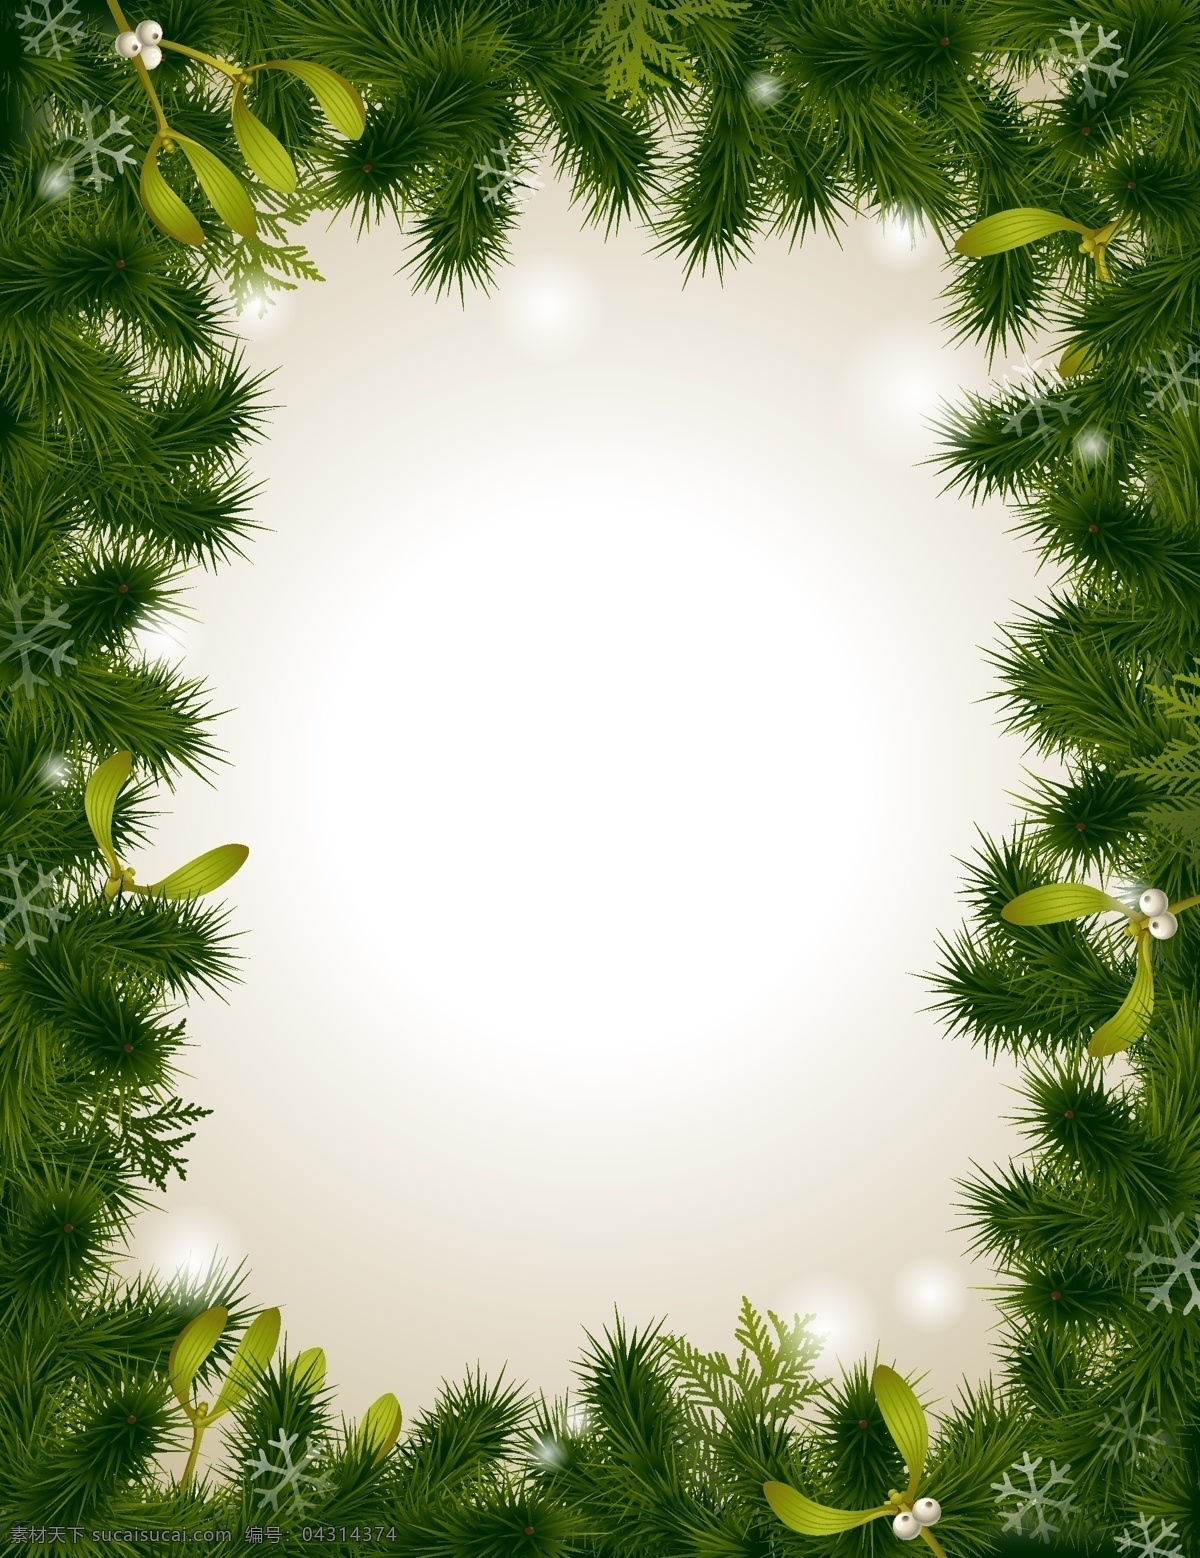 矢量 圣诞节 立体 质感 松枝 冬季 背景 边框 简约 绿色 文艺 小清新